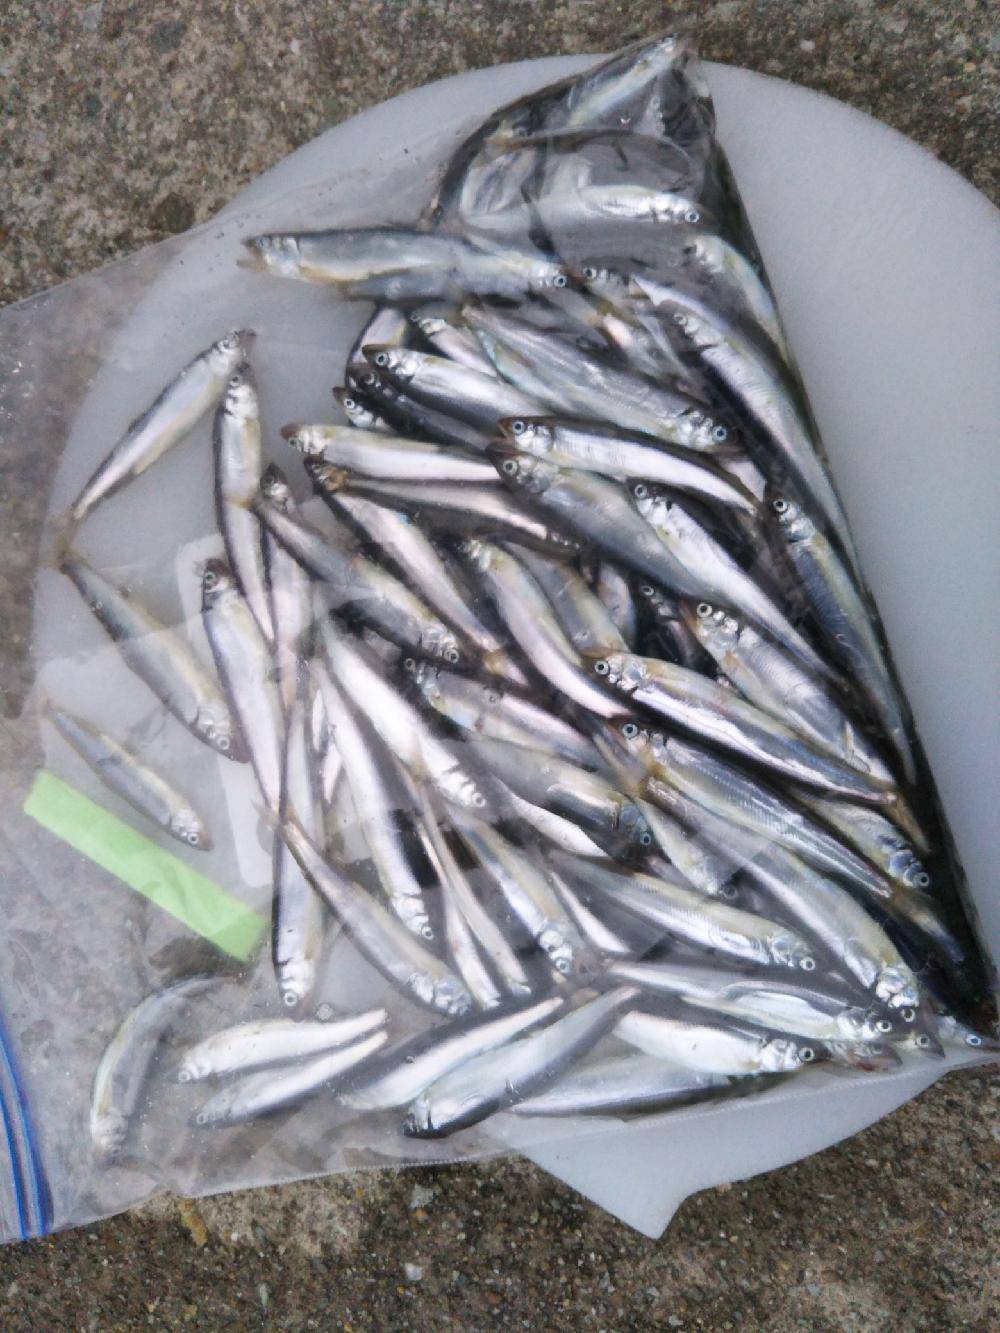 和歌山に家族でサビキ釣りに行こう 3月のファミリーフィッシング サビキ 稚鮎の釣り情報 カンパリプラス